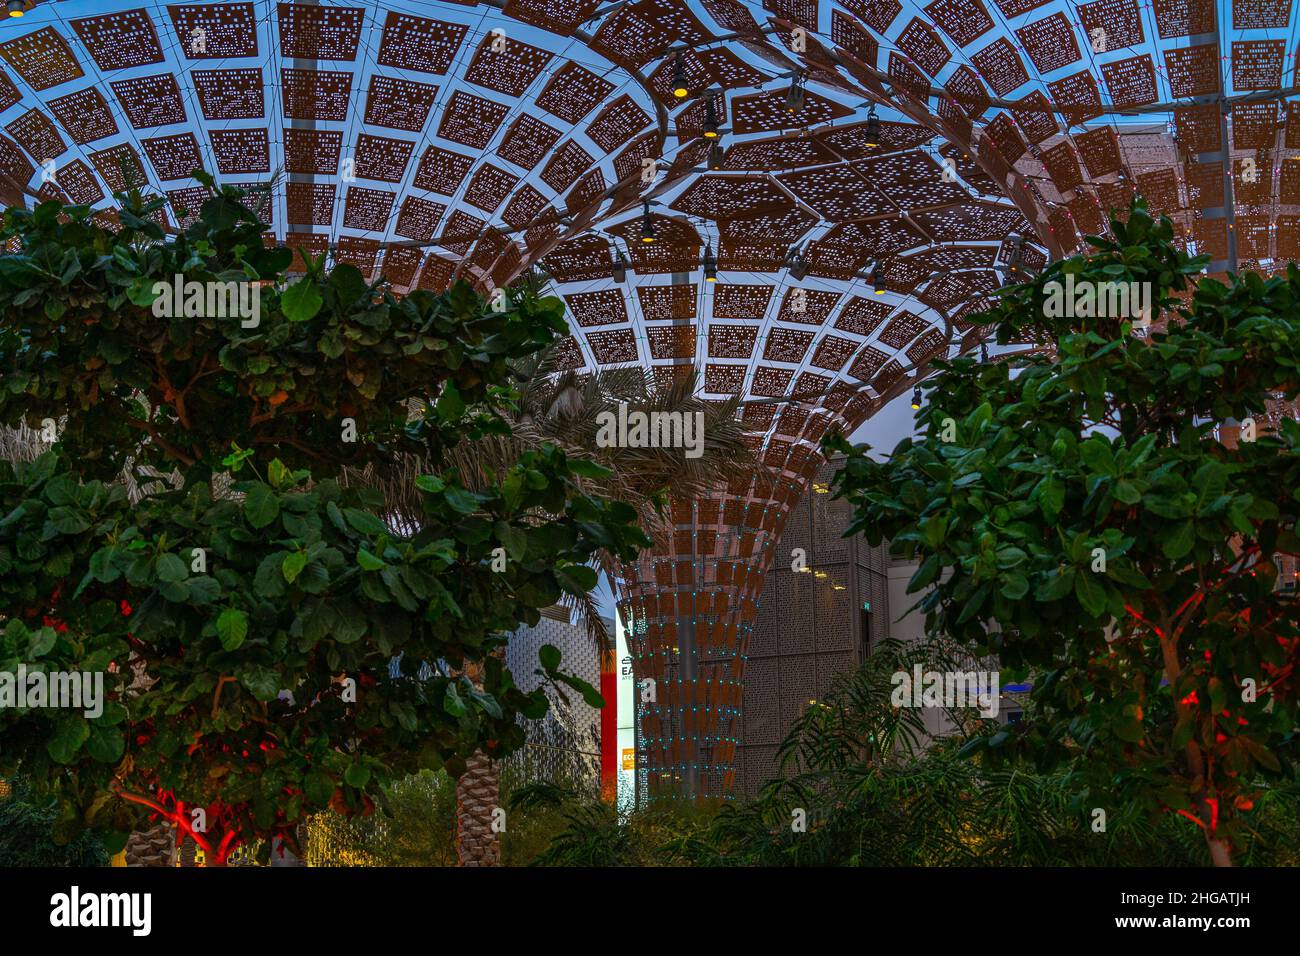 Pannelli solari a forma di imbuto dettaglio astratto incorniciato da alberi al Dubai Expo 2020 Foto Stock